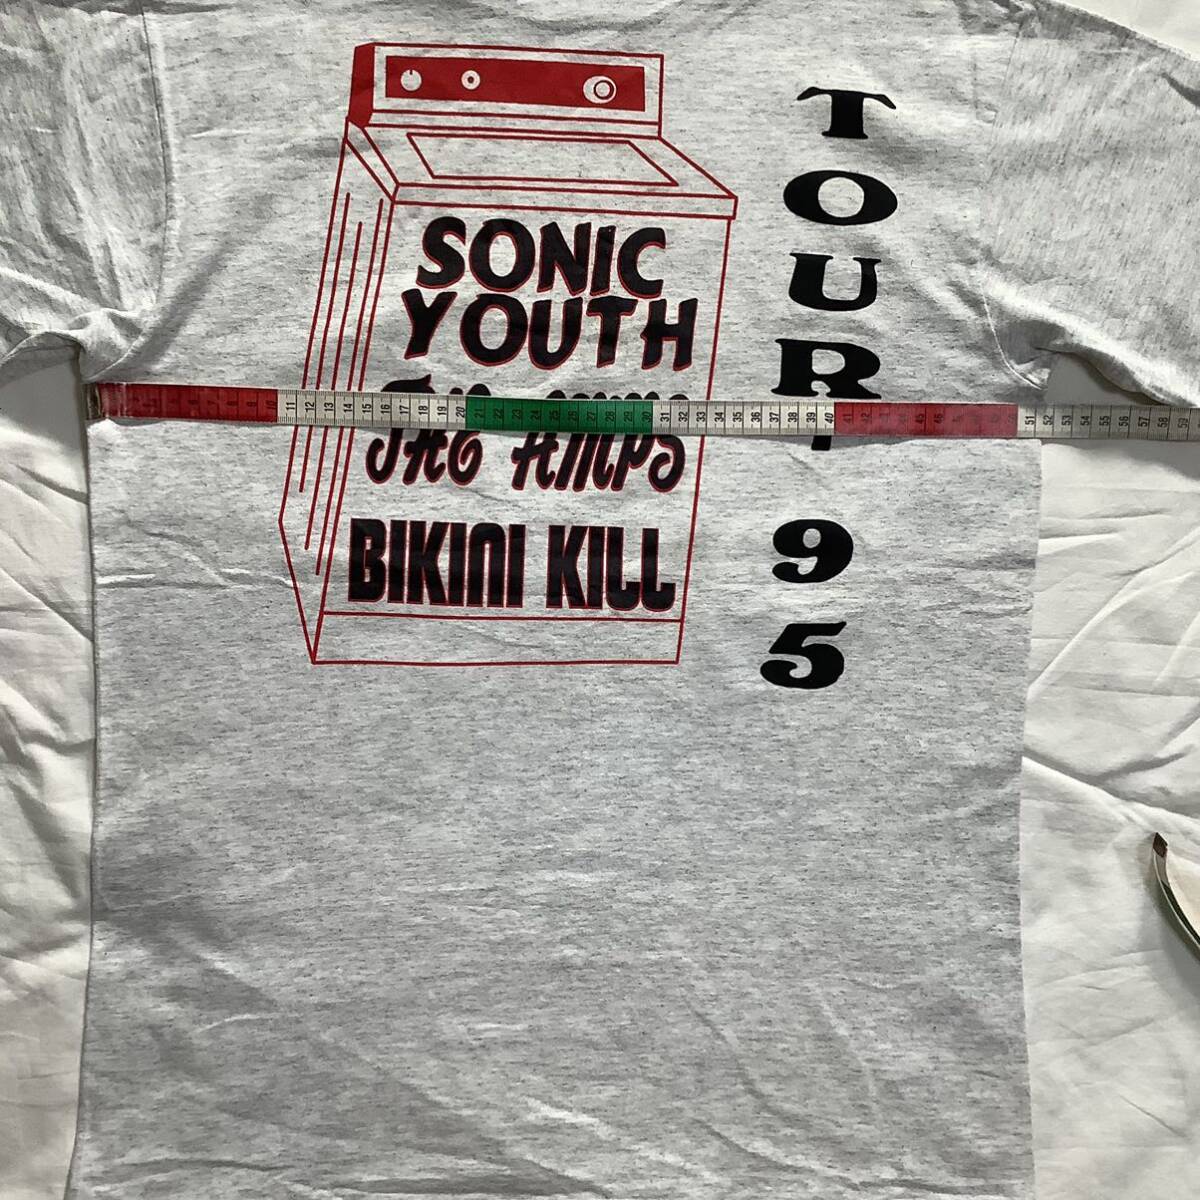 スペシャル! 1995 Sonic Youth Bikini Kill Tour パーキングロット 両面プリント ヴィンテージ Tシャツ 80s 90sの画像9